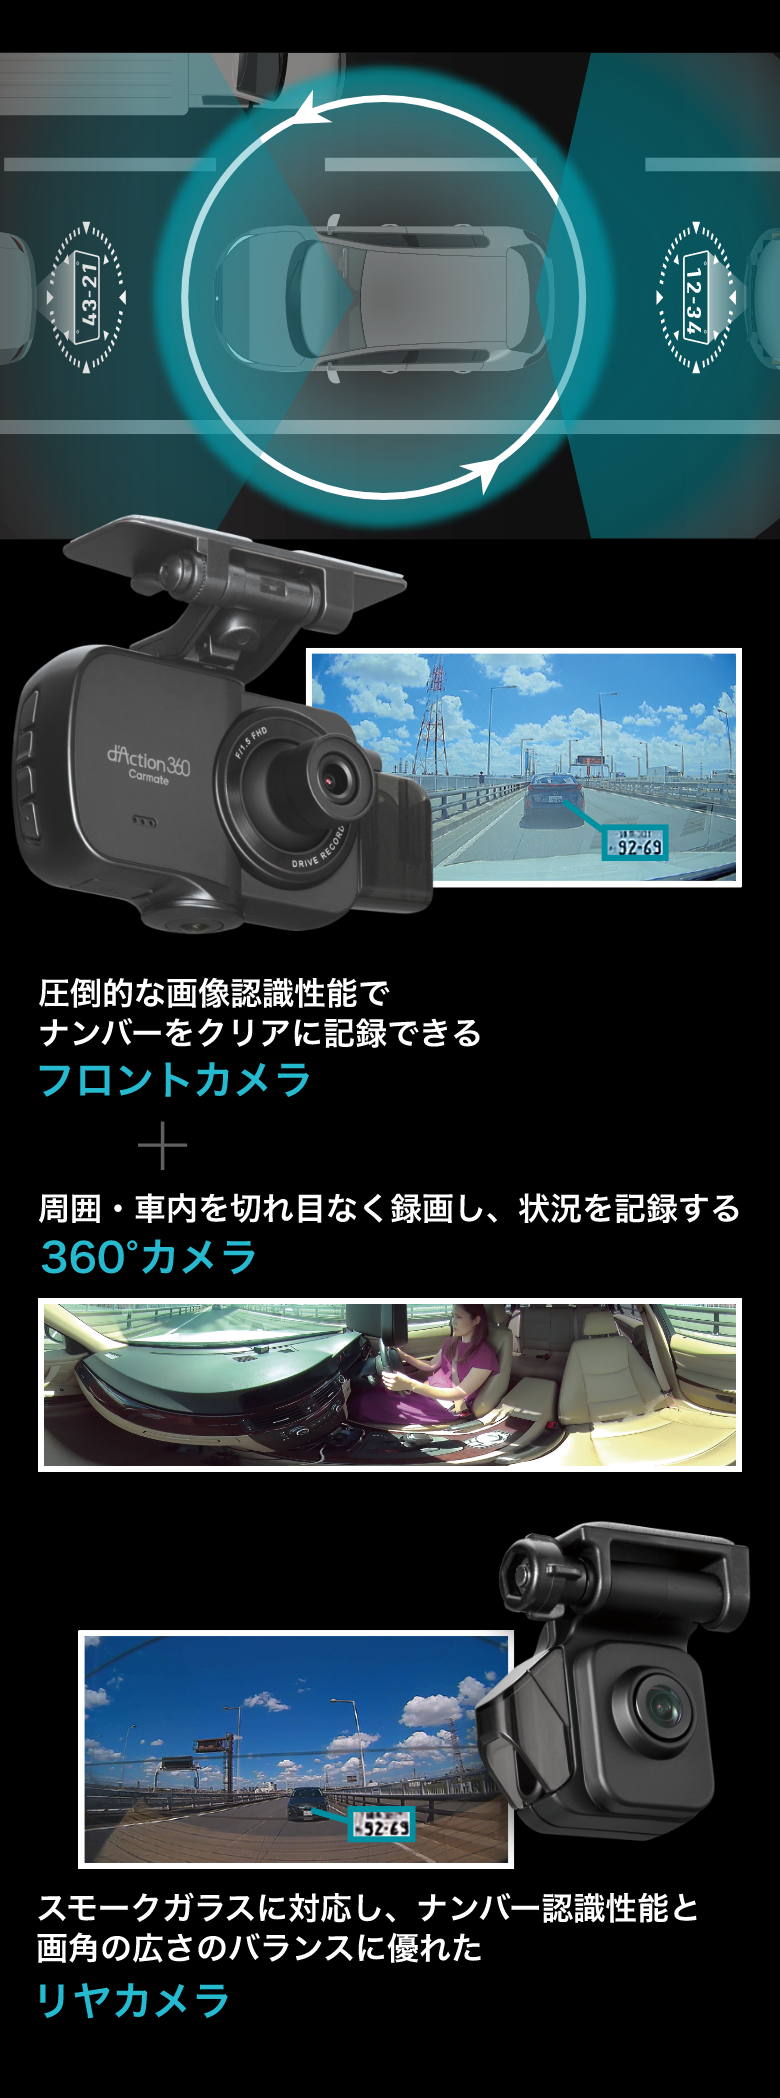 バーチャルフロントカメラで車両前方をクリアに記録+360°カメラで周囲を記録 リヤカメラであおり運転を記録